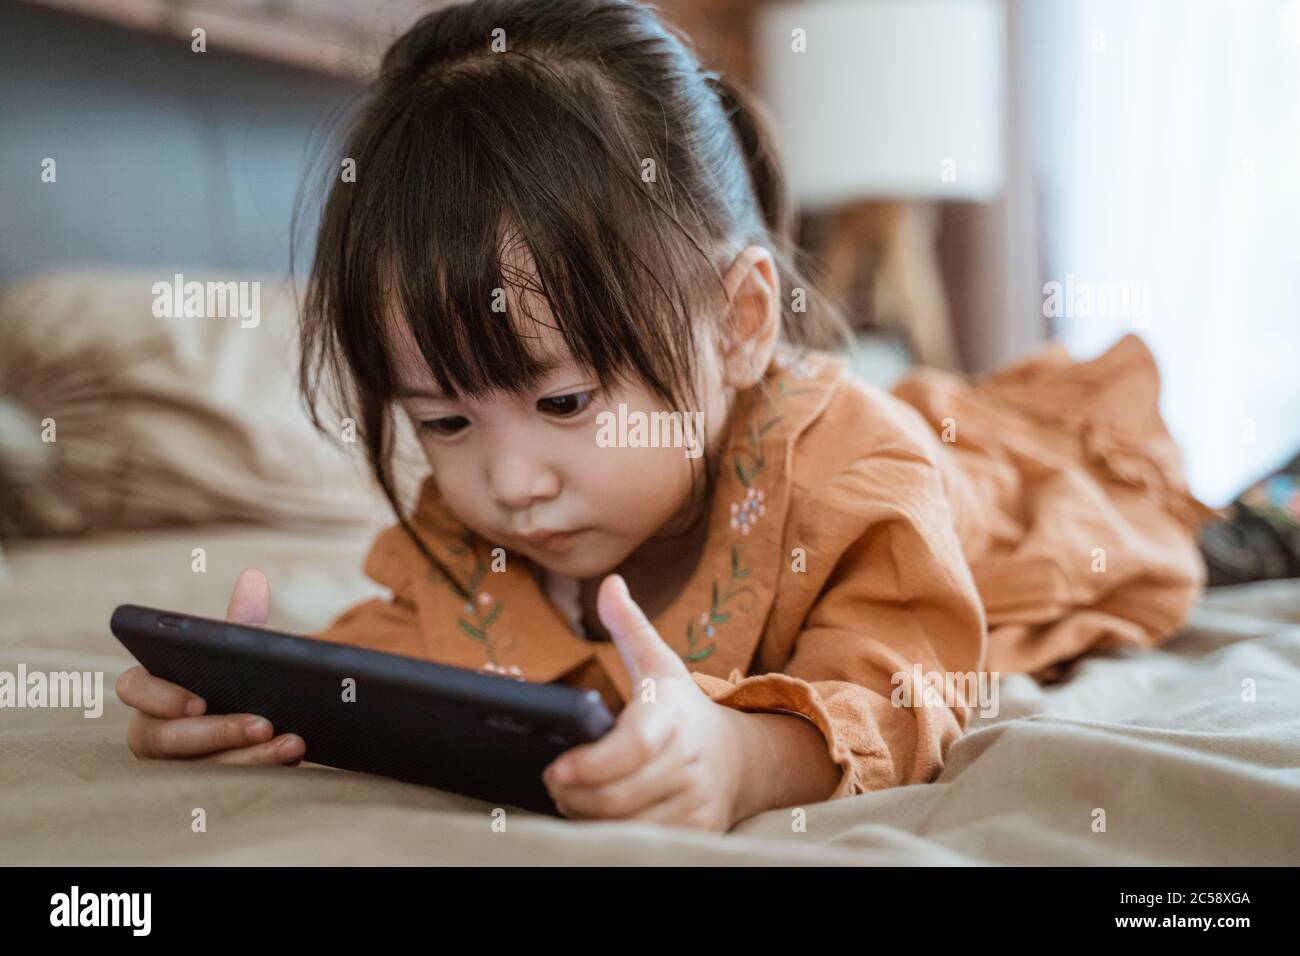 Kleines Mädchen lachte glücklich, als sie ein Telefon hielt, um das Video des Kindes zu sehen Stockfoto